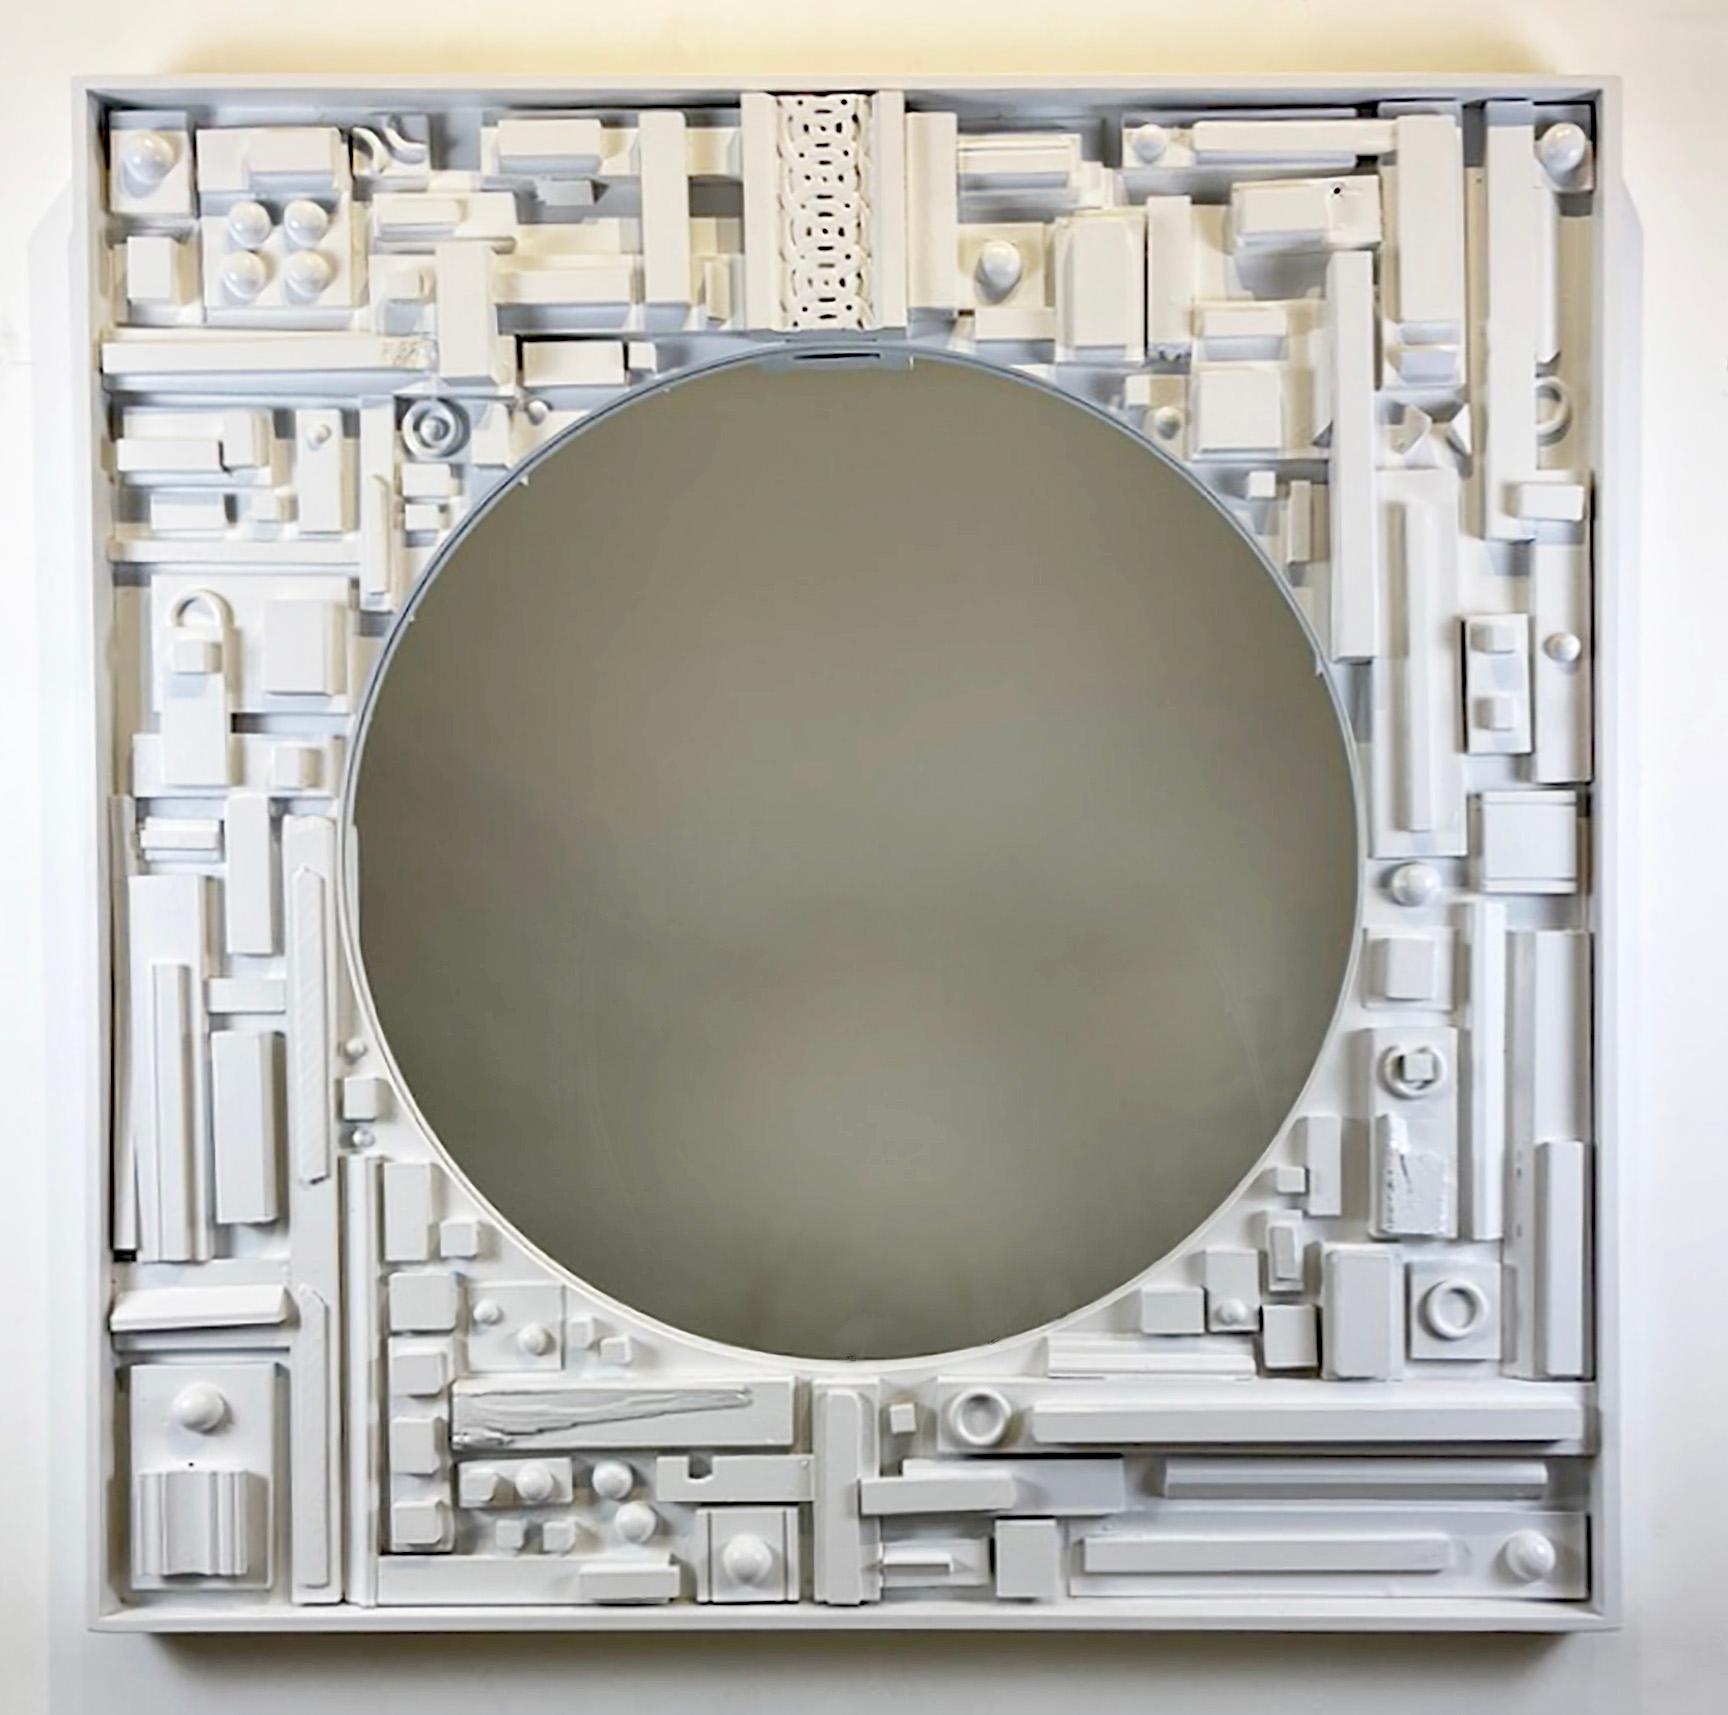 Skyline-Spiegel des Künstlers Jordan Tabachnik, 2024
Mischtechnik, Altholz, neues Holz, Farbe, Glas
Skulpturaler Spiegelrahmen

Größe